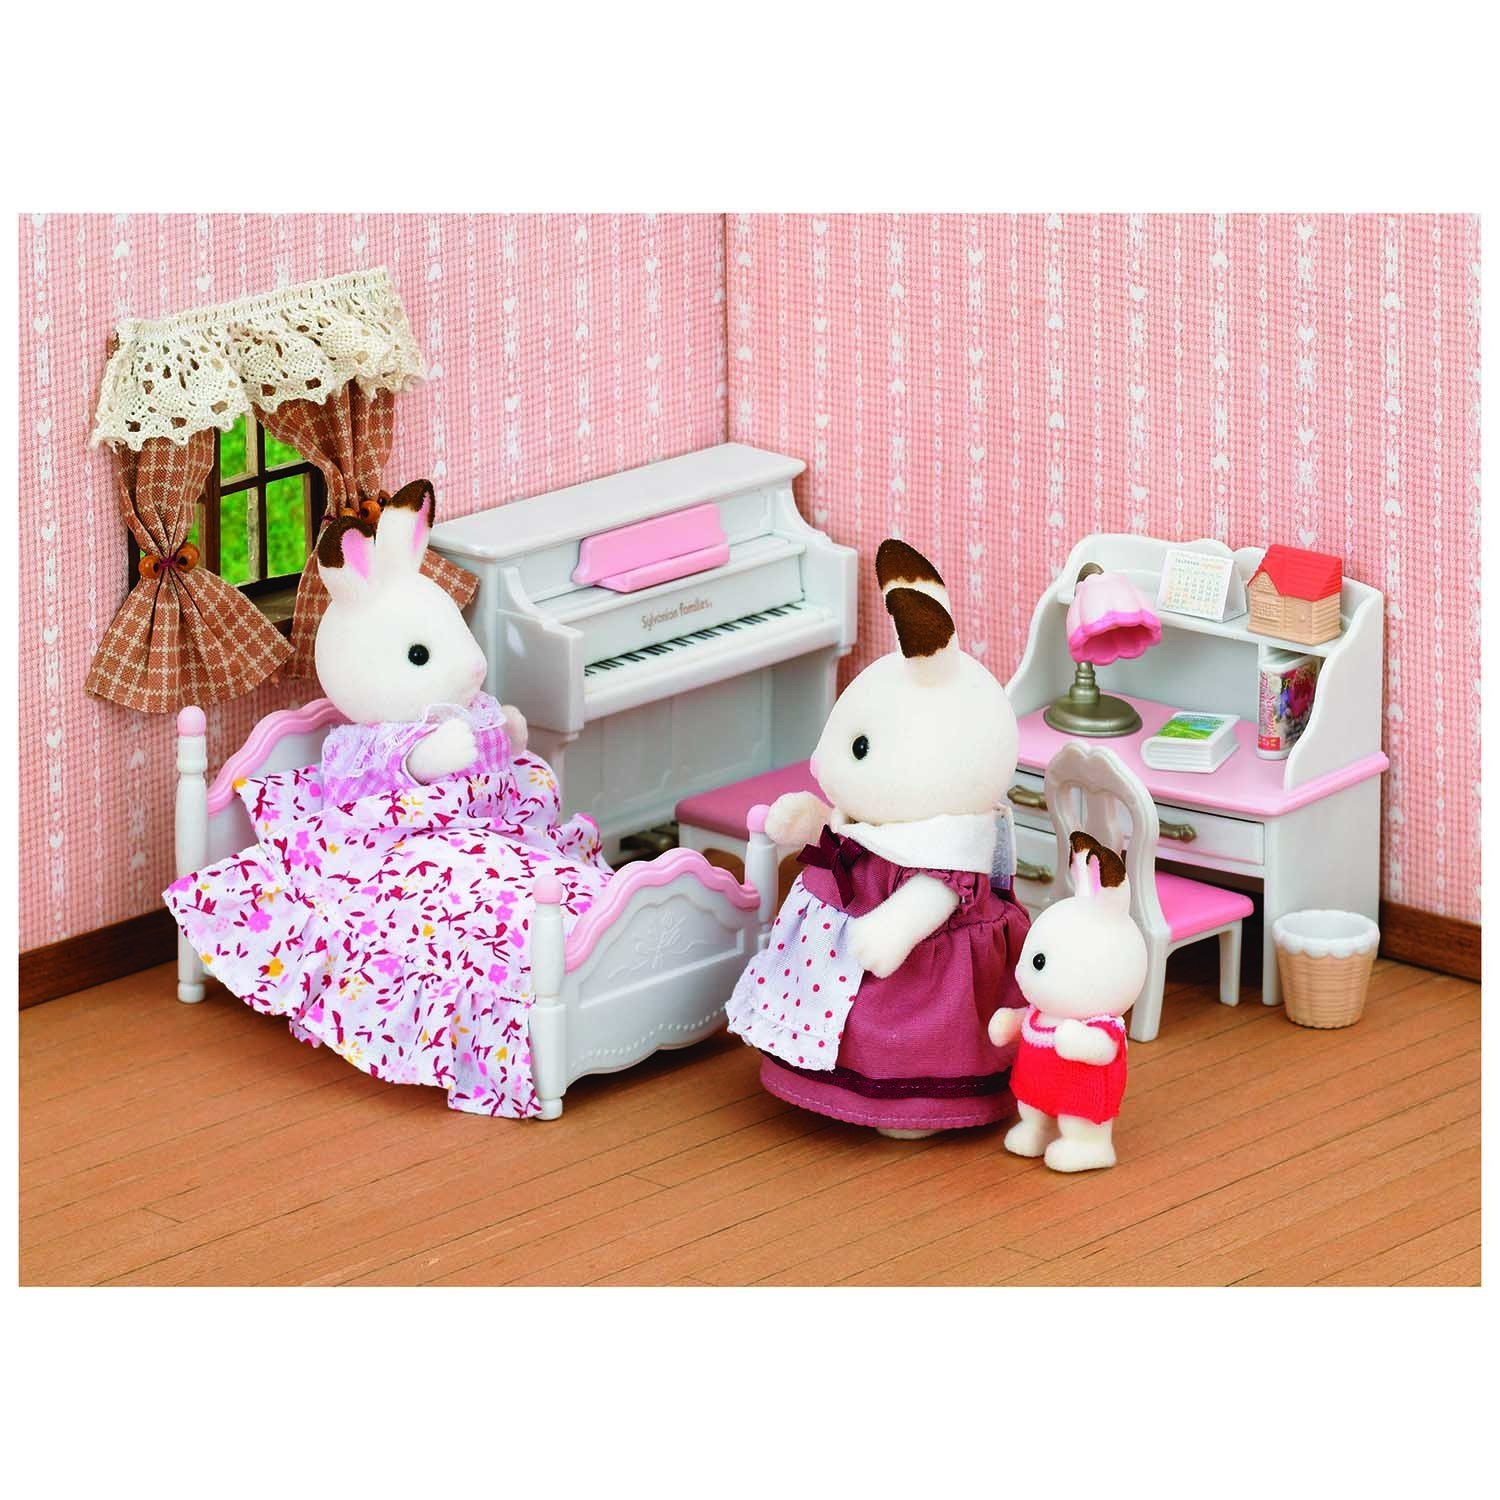 Набор Sylvanian Families детская комната, бело-розовая (5032)